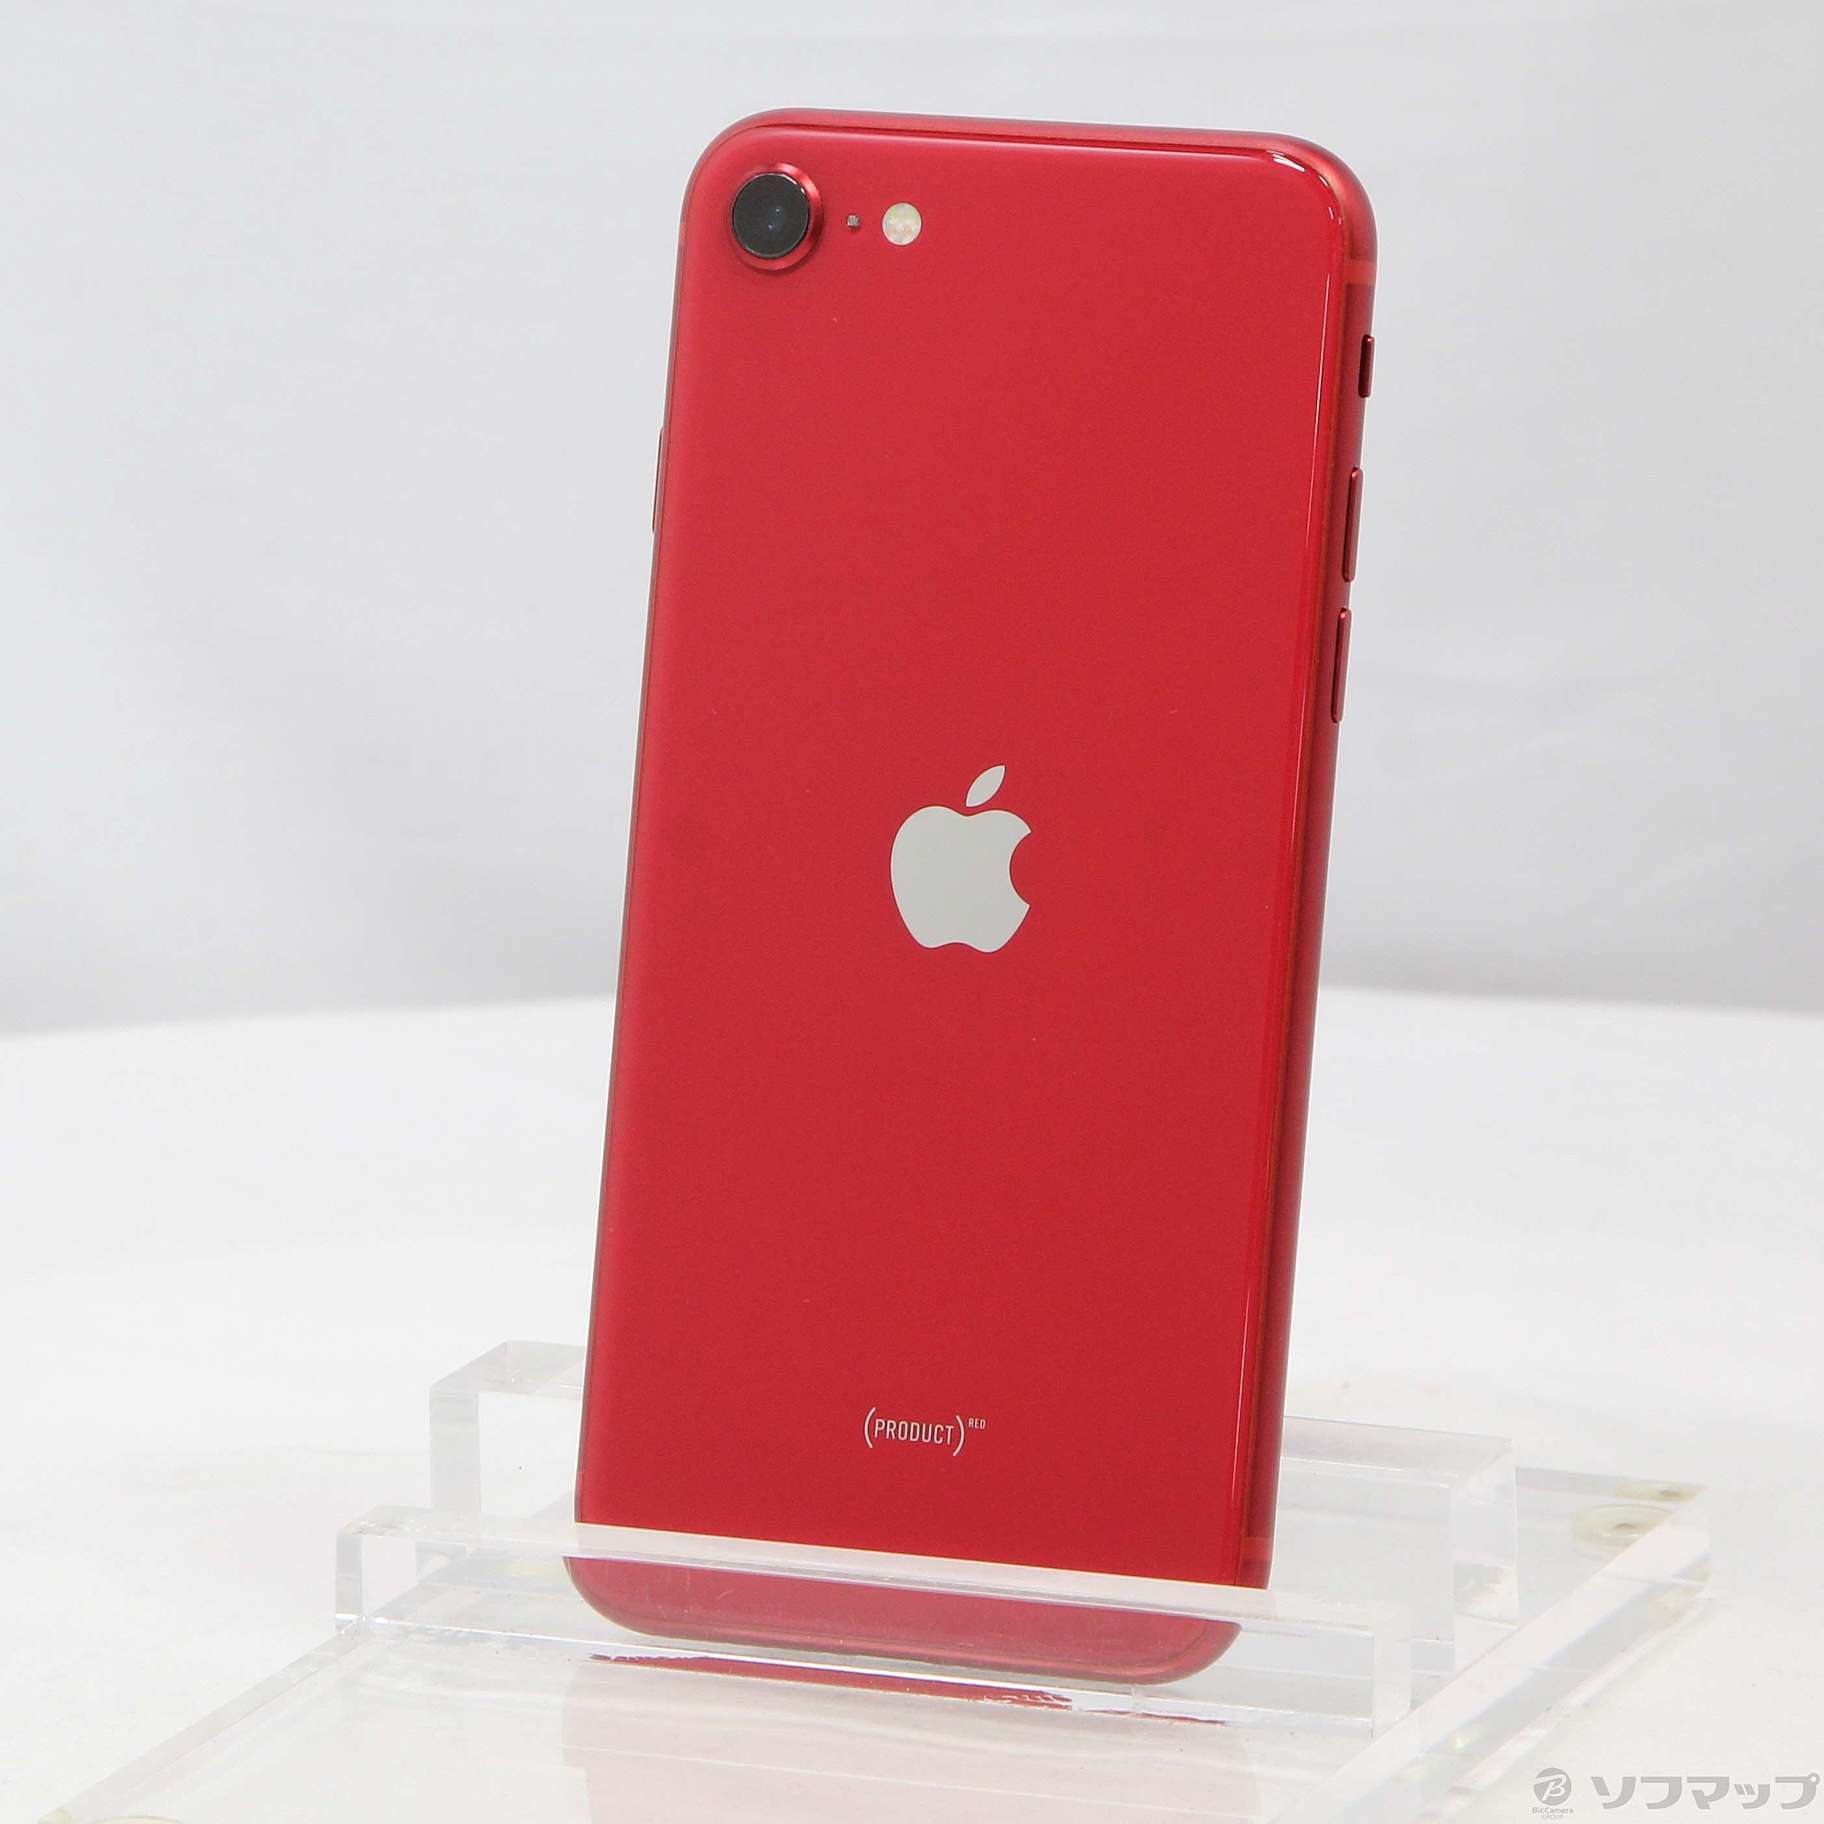 ご注意ください Apple iPhone SE 第2世代 64GB product RED - 通販